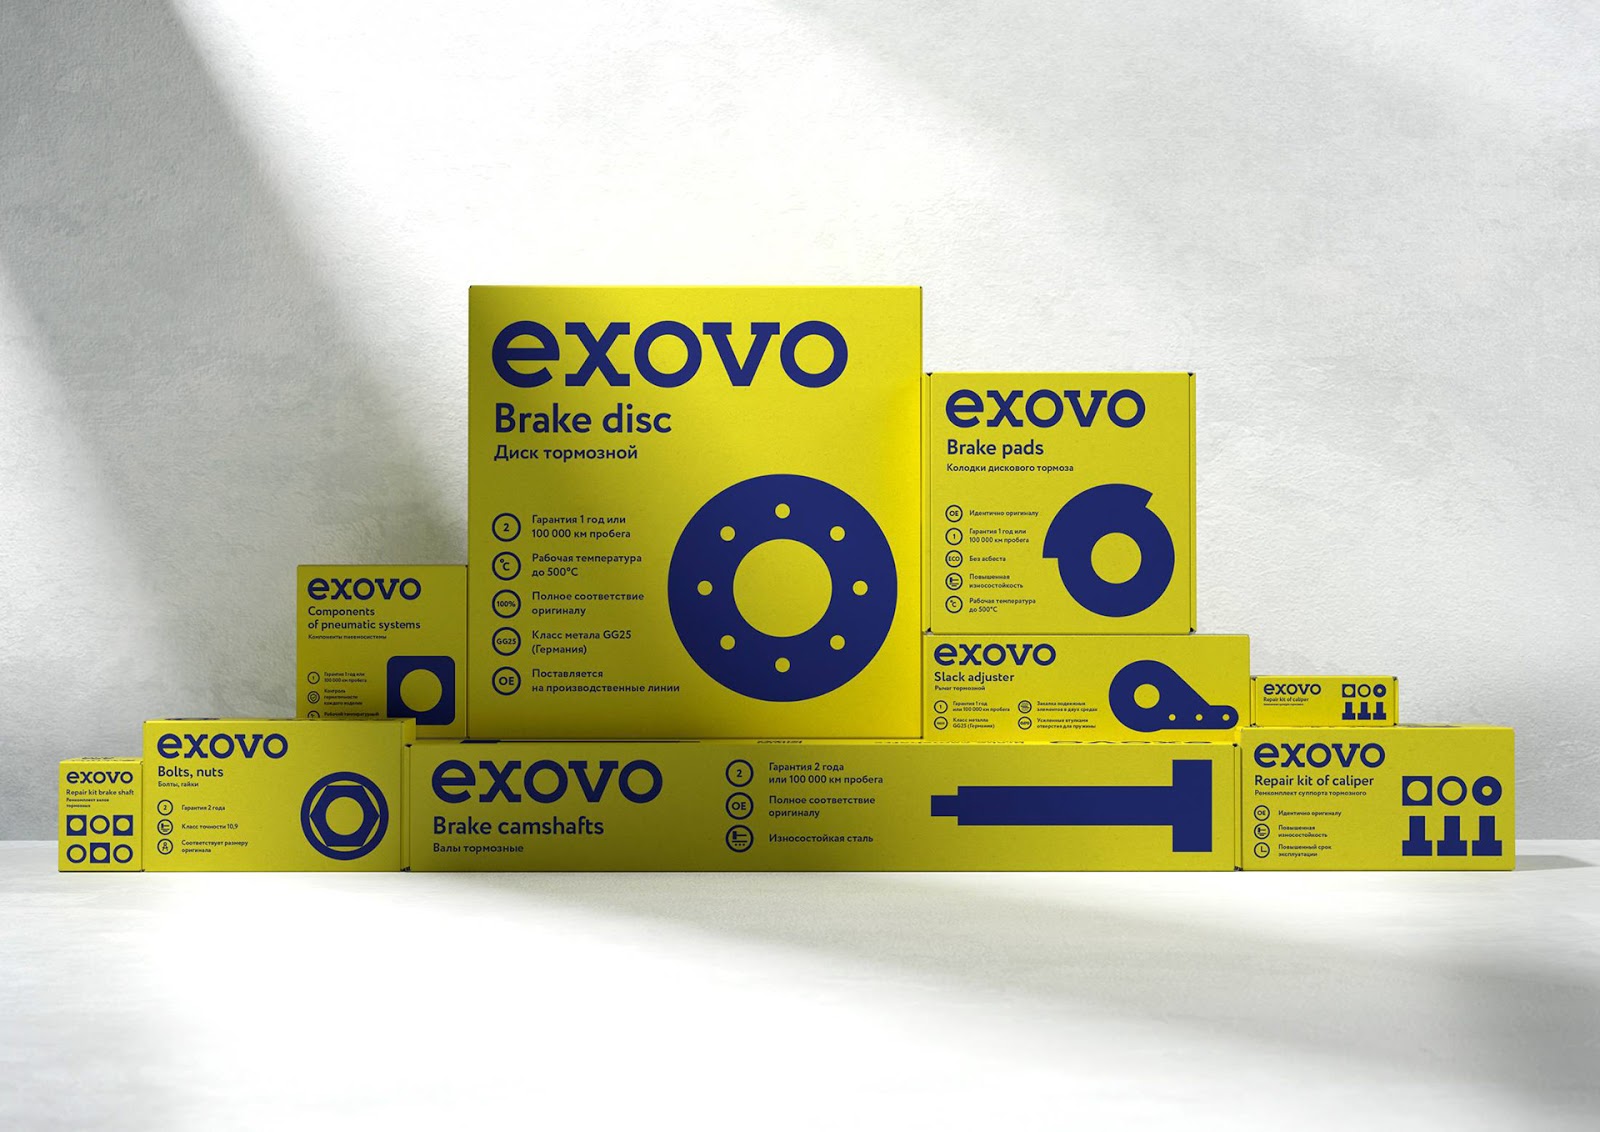 Exovo汽车配件包装设计欣赏(图3)